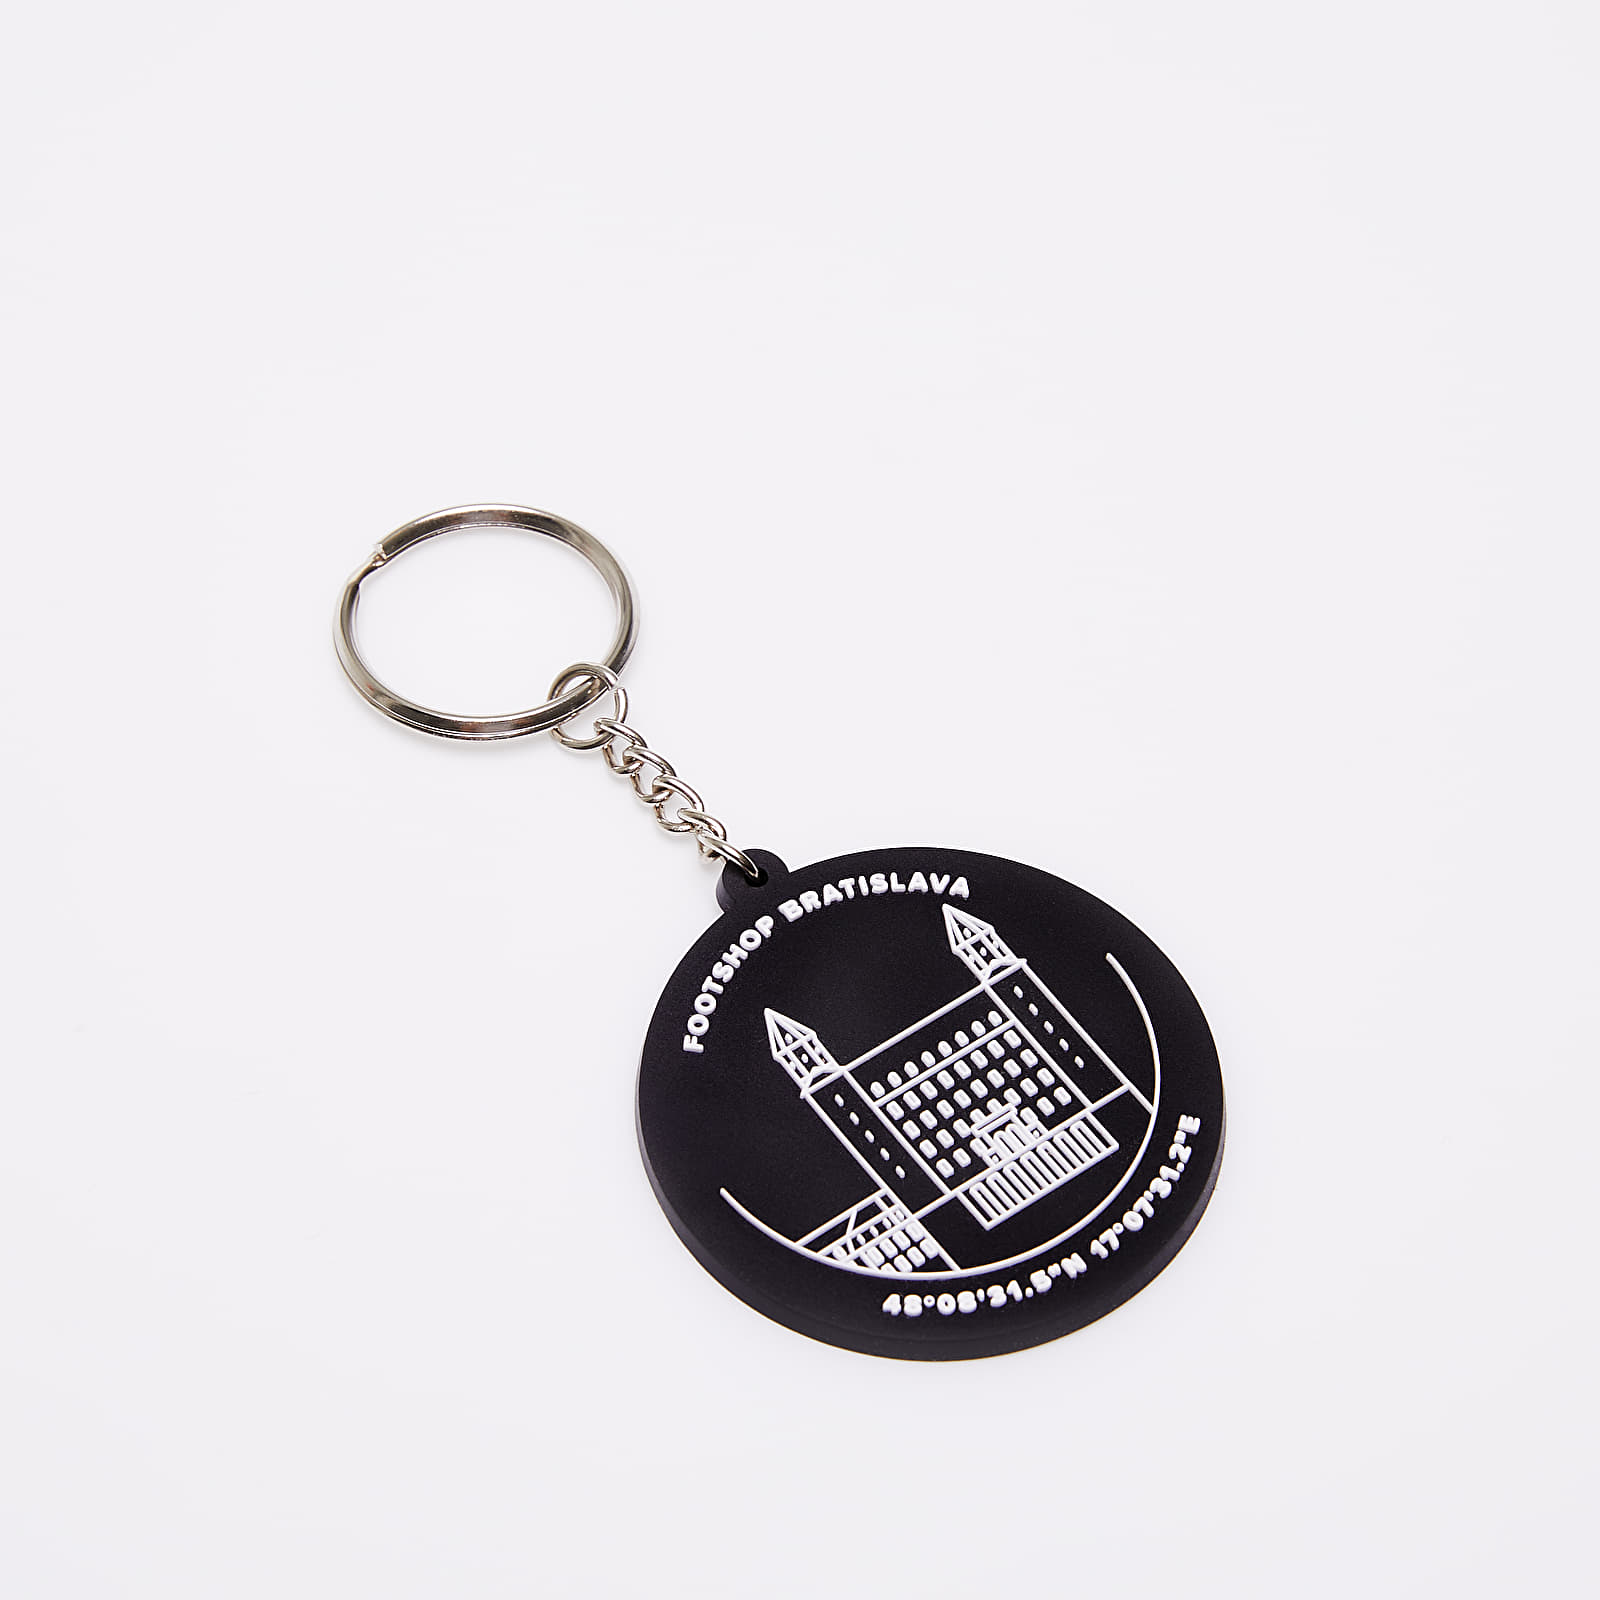 Egyéb kiegészítők Footshop Bratislava Keychain Black